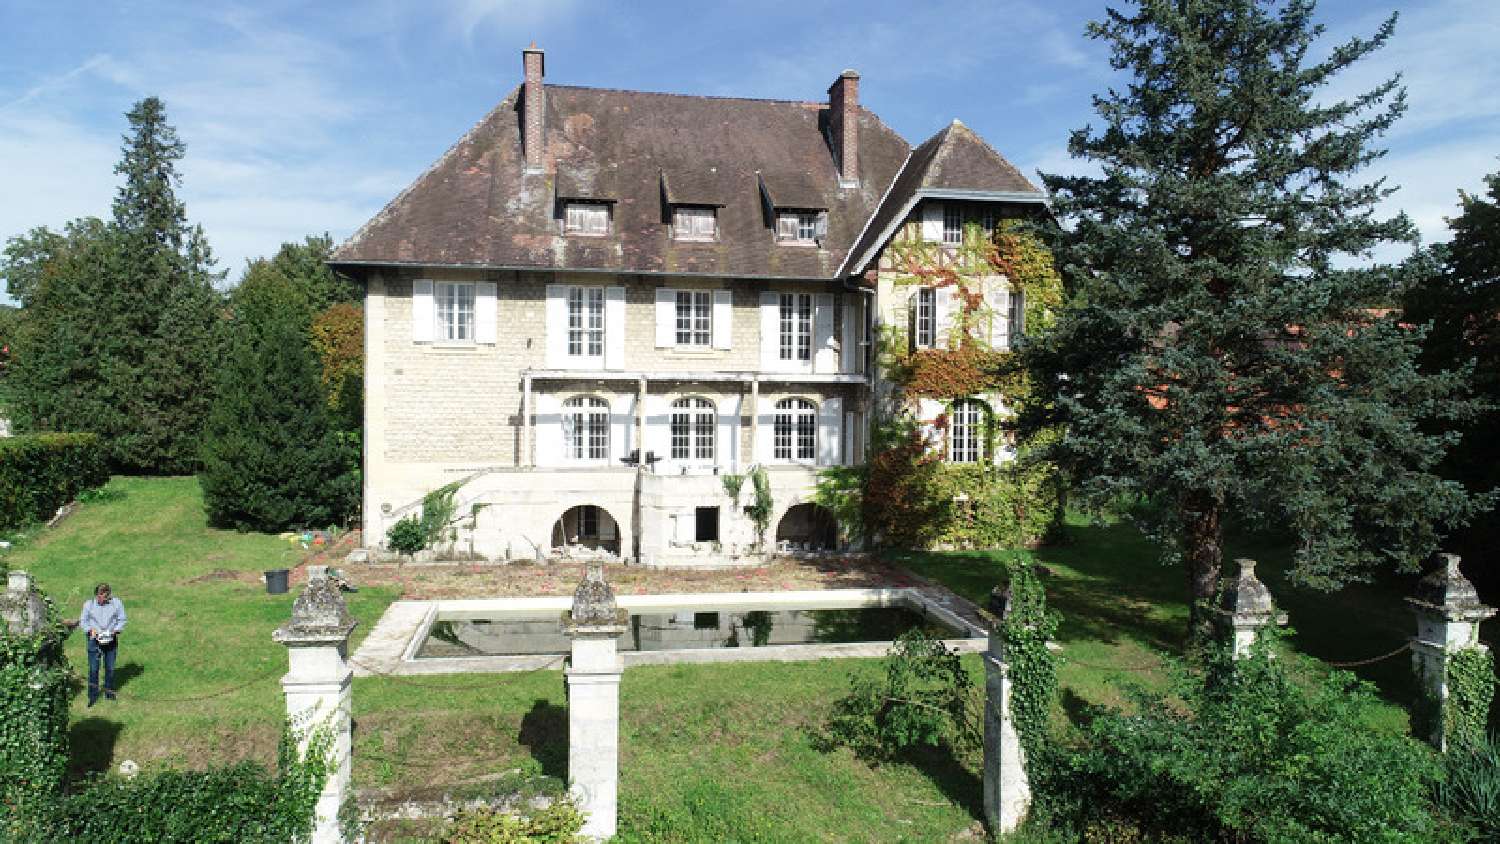  à vendre maison bourgeoise Missy-sur-Aisne Aisne 1